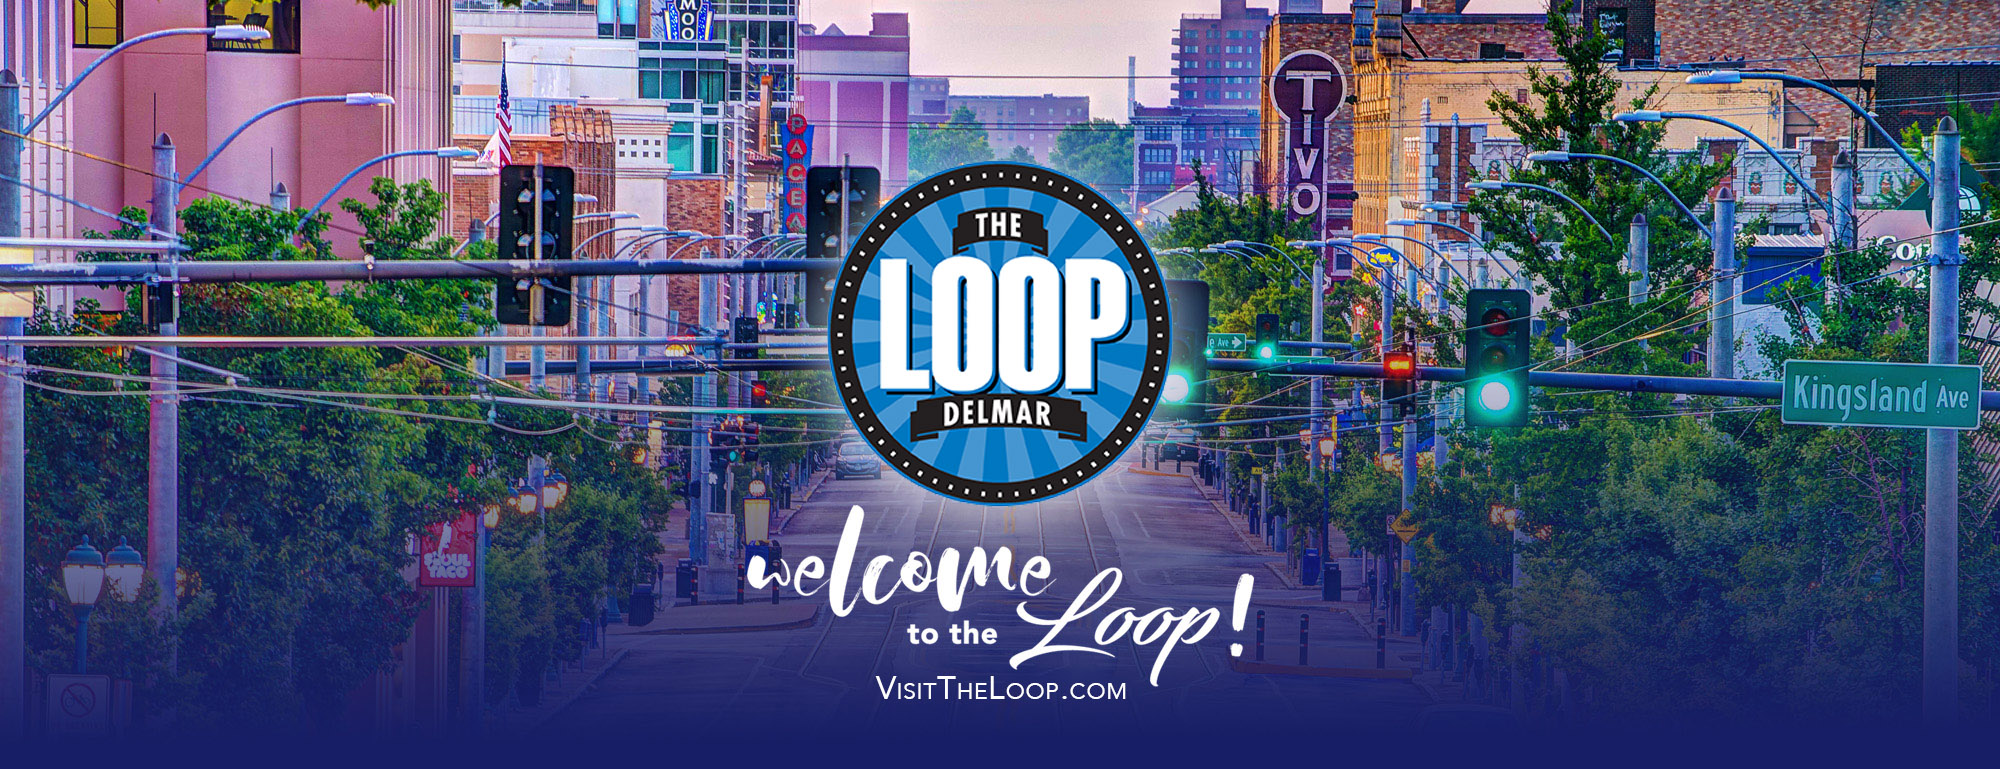 visittheloop.com